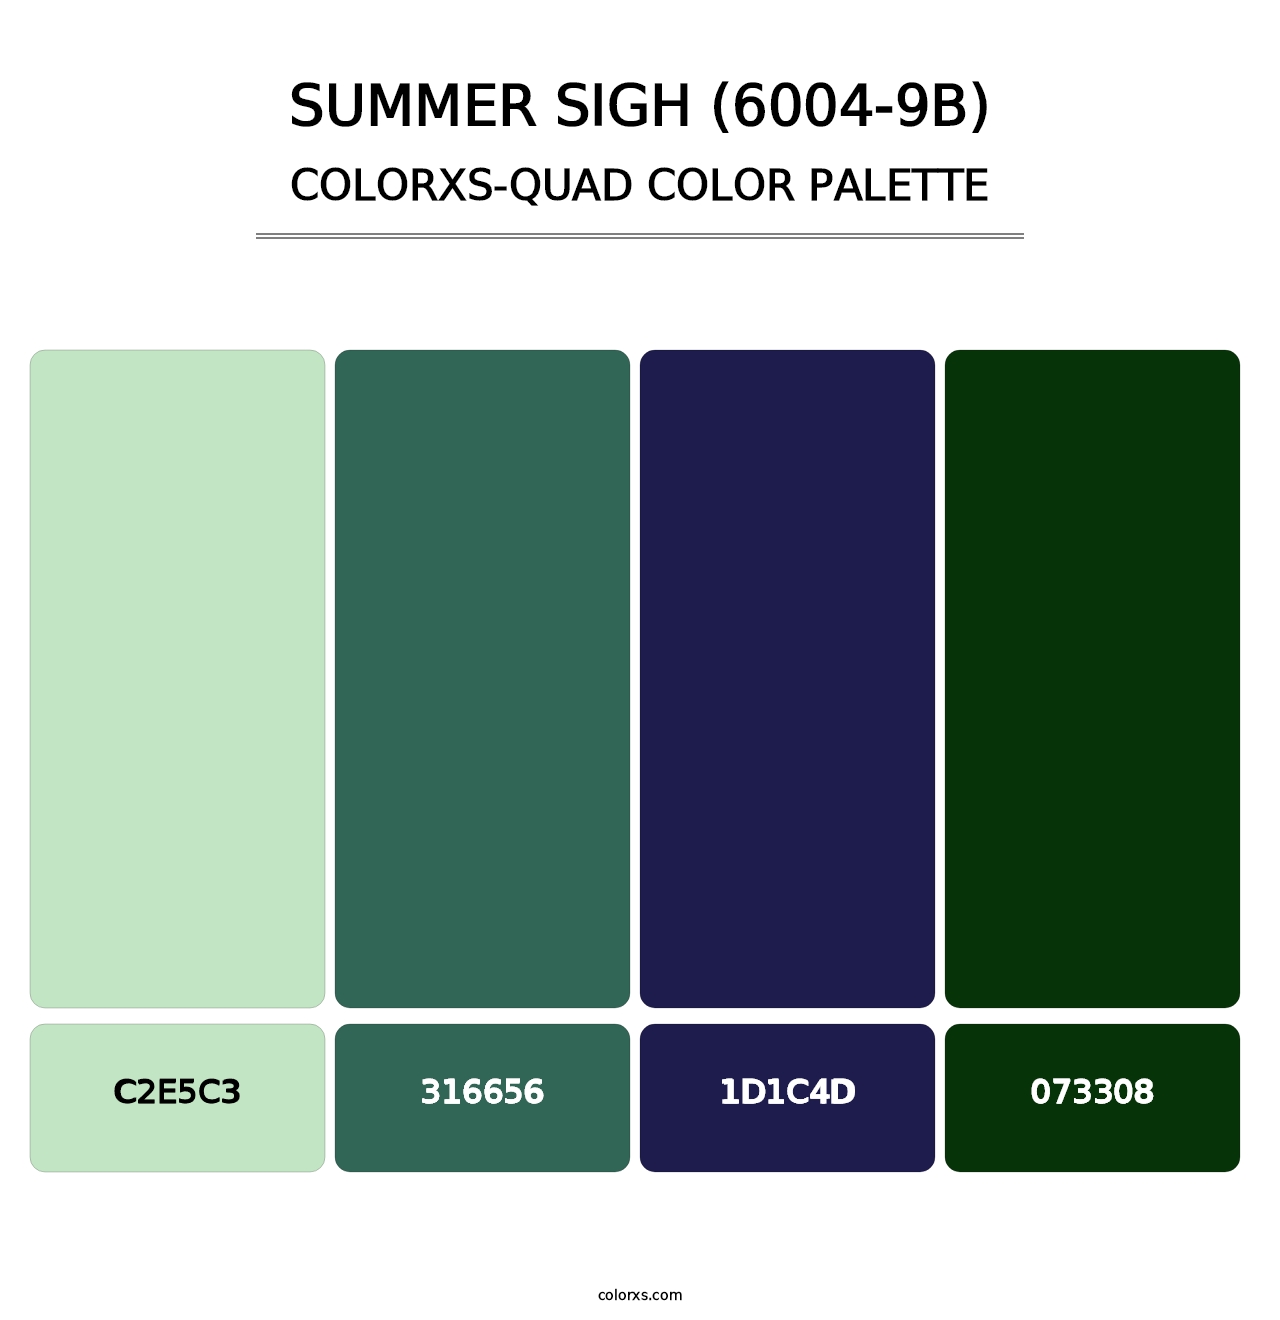 Summer Sigh (6004-9B) - Colorxs Quad Palette